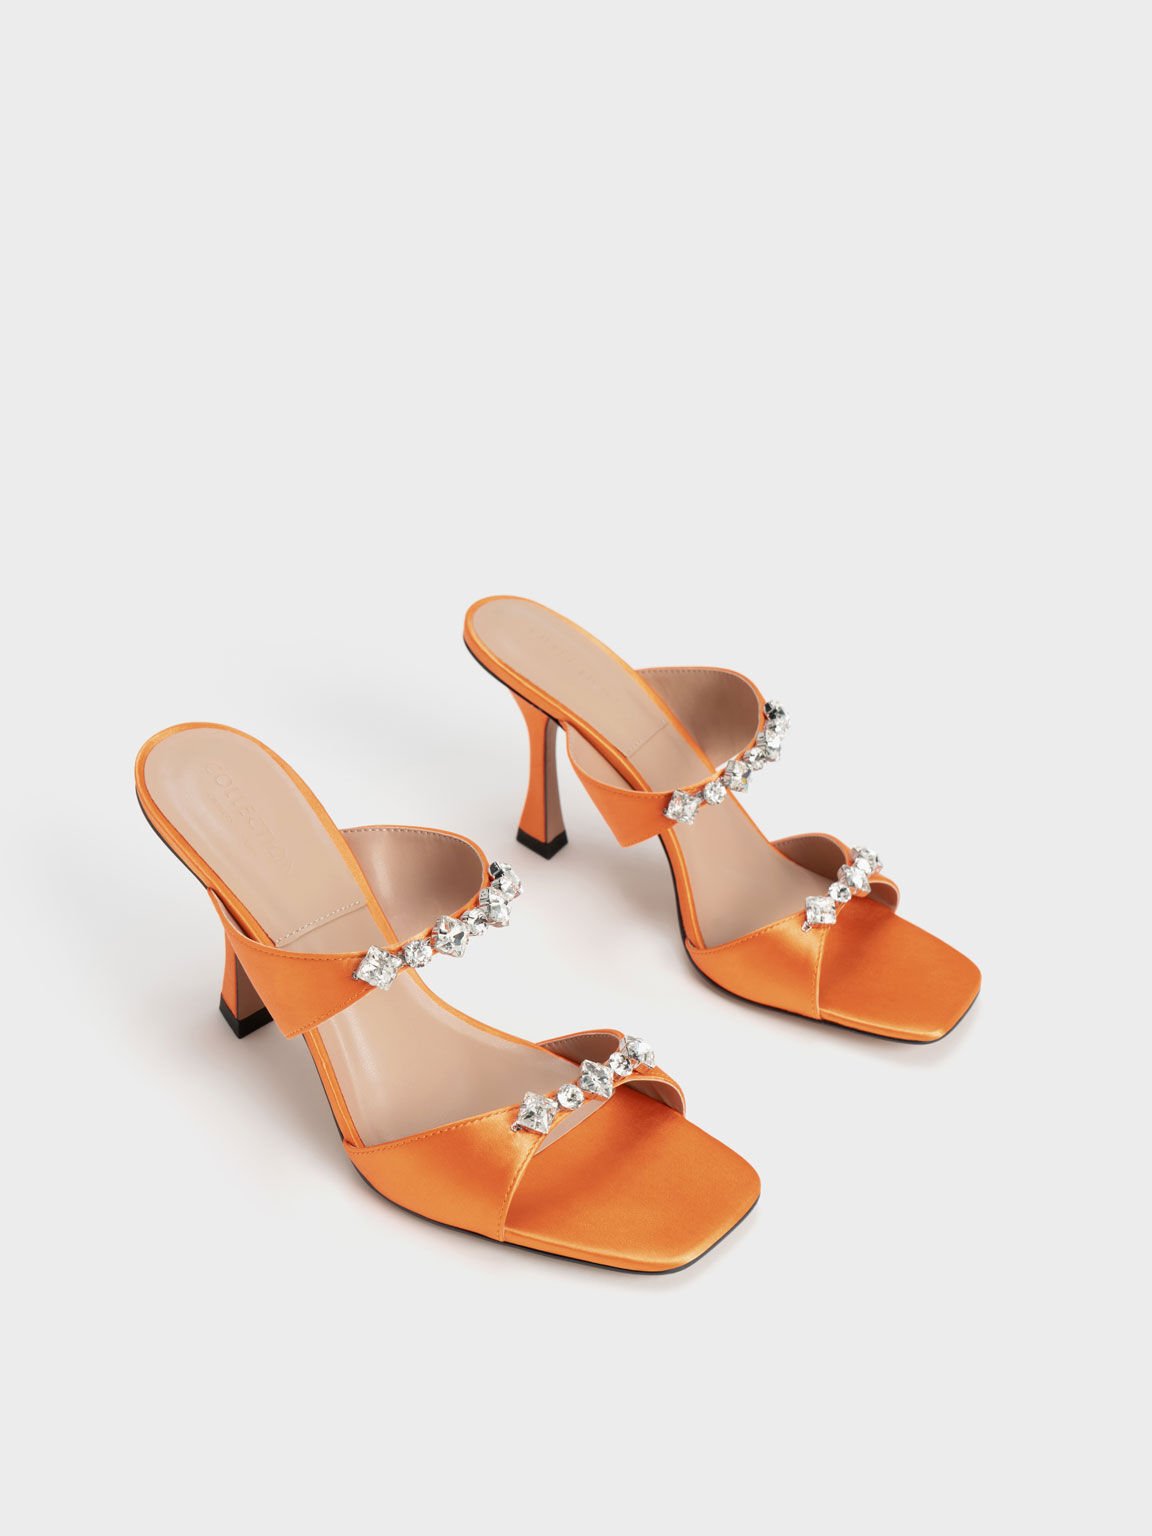 Metallic Gem-Encrusted Sandals, Orange, hi-res